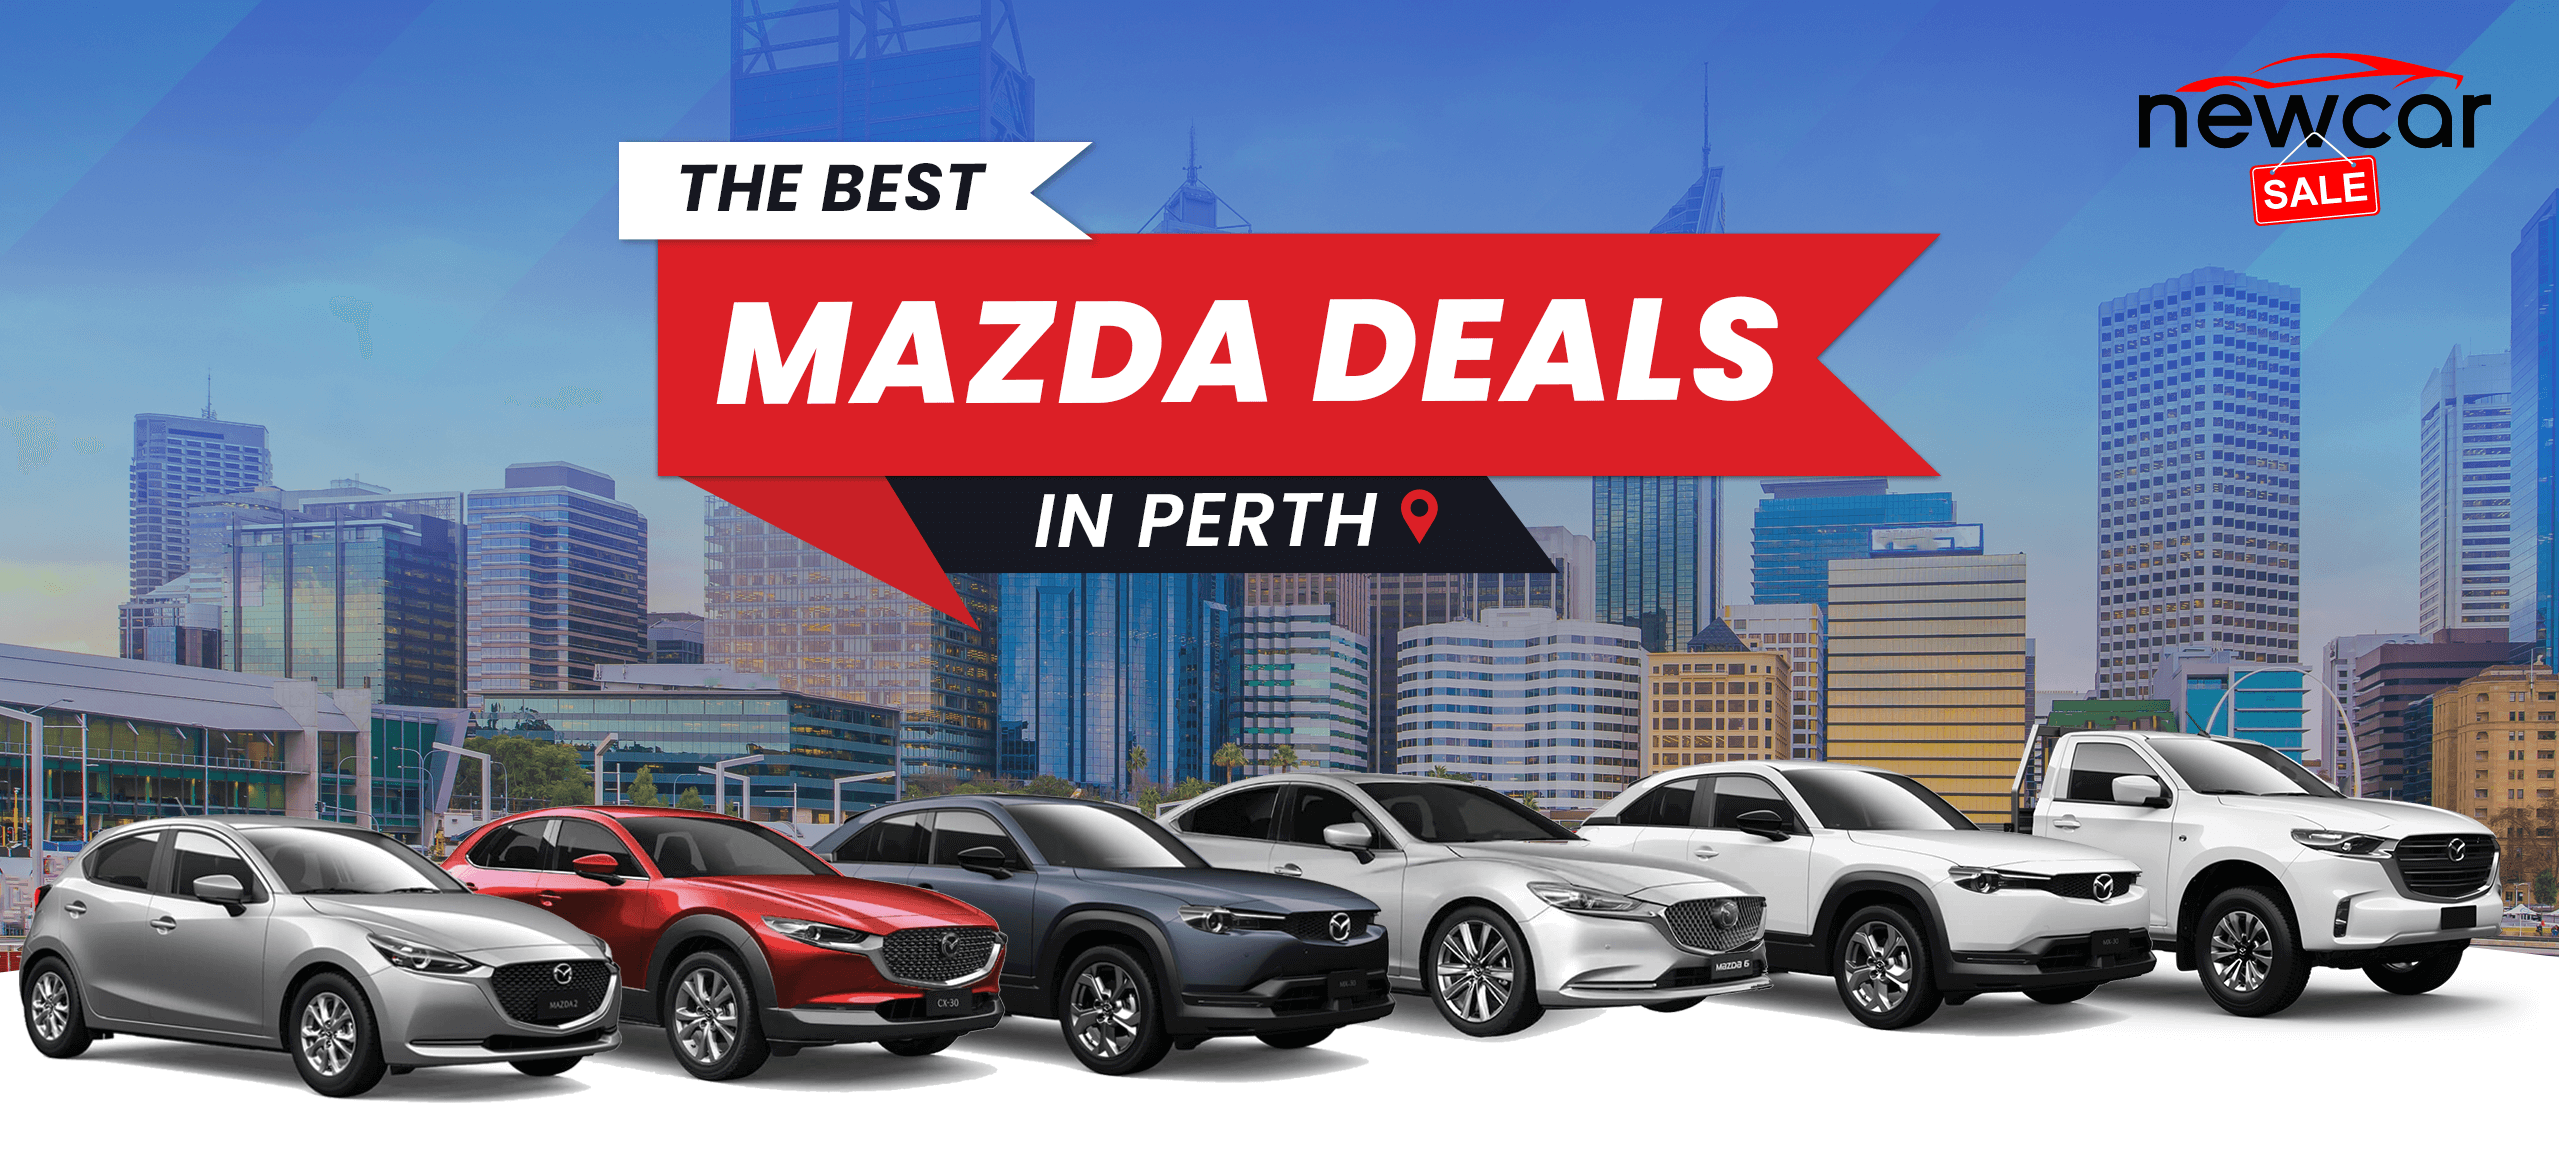 The Best Mazda Deals 